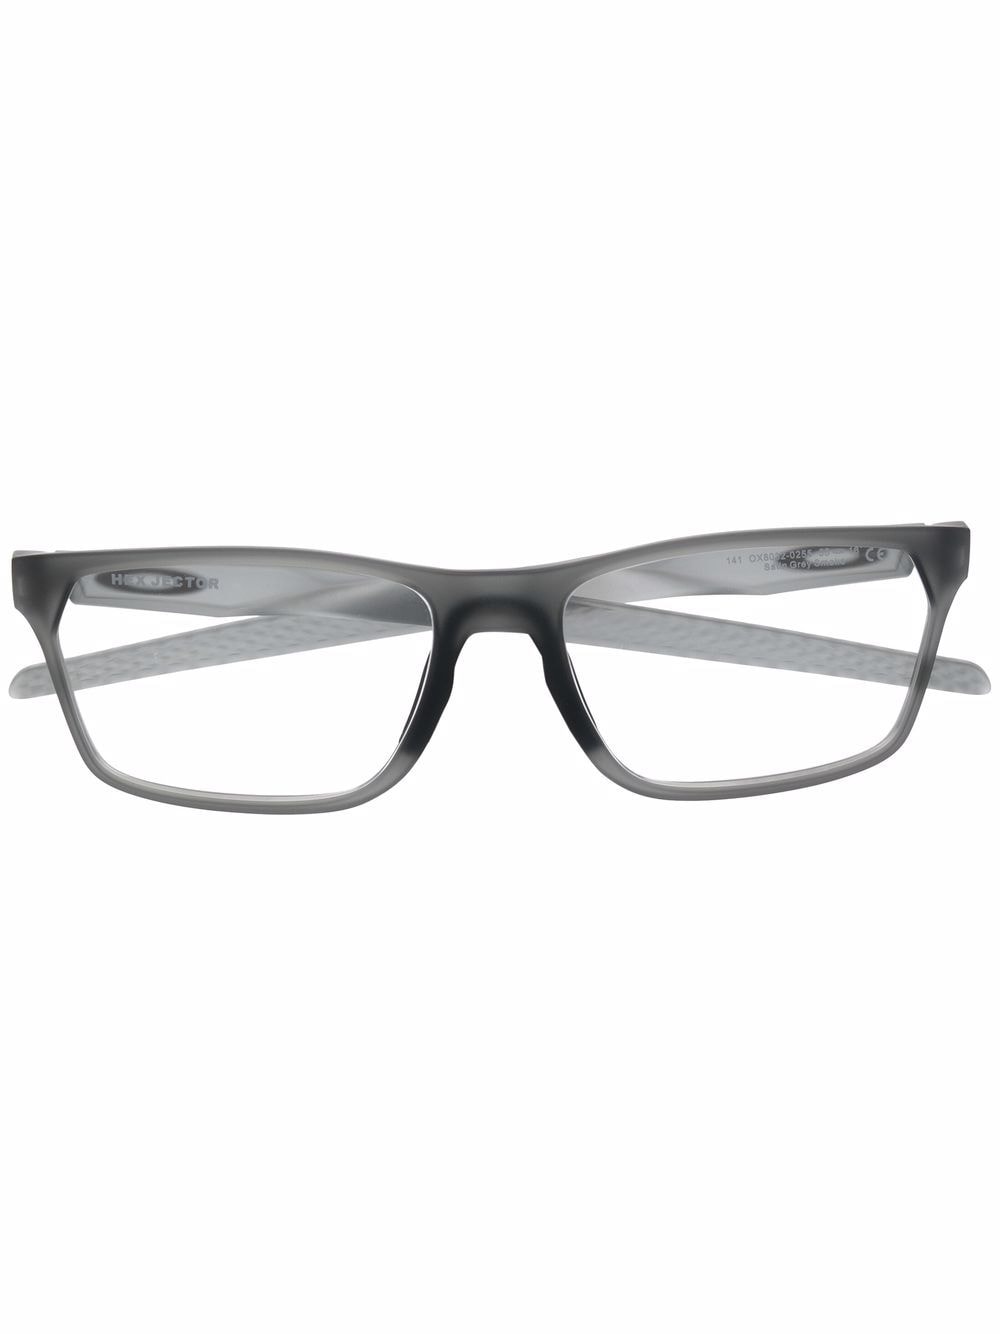 oakley lunettes de vue à monture rectangulaire - gris